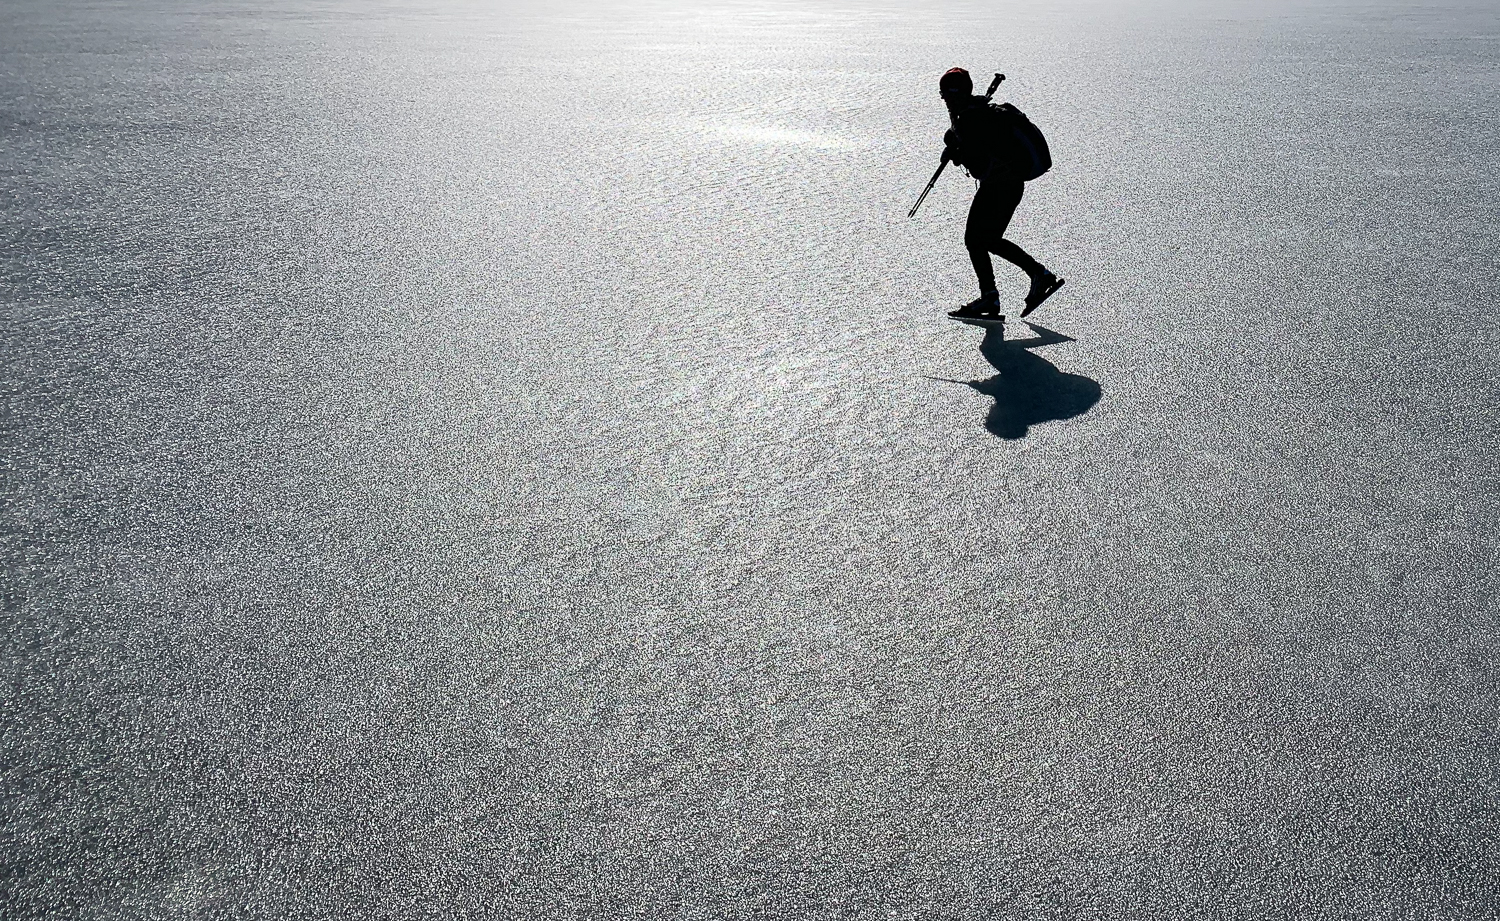 Långfärdskridskoåkare i motljus på sjön Båven, Sörmland